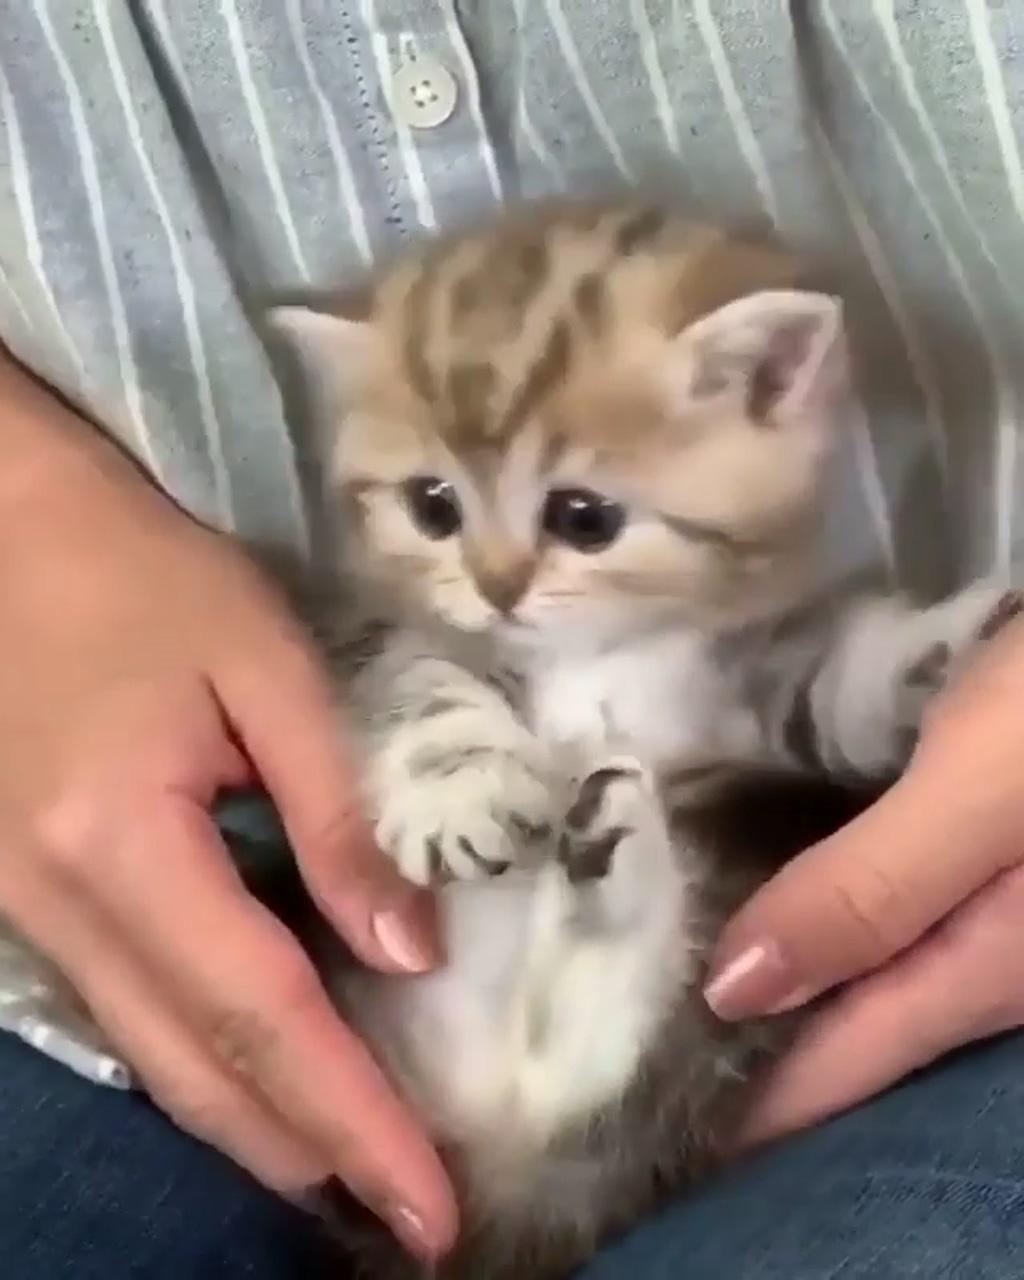 Cute kittens; cute little kittens